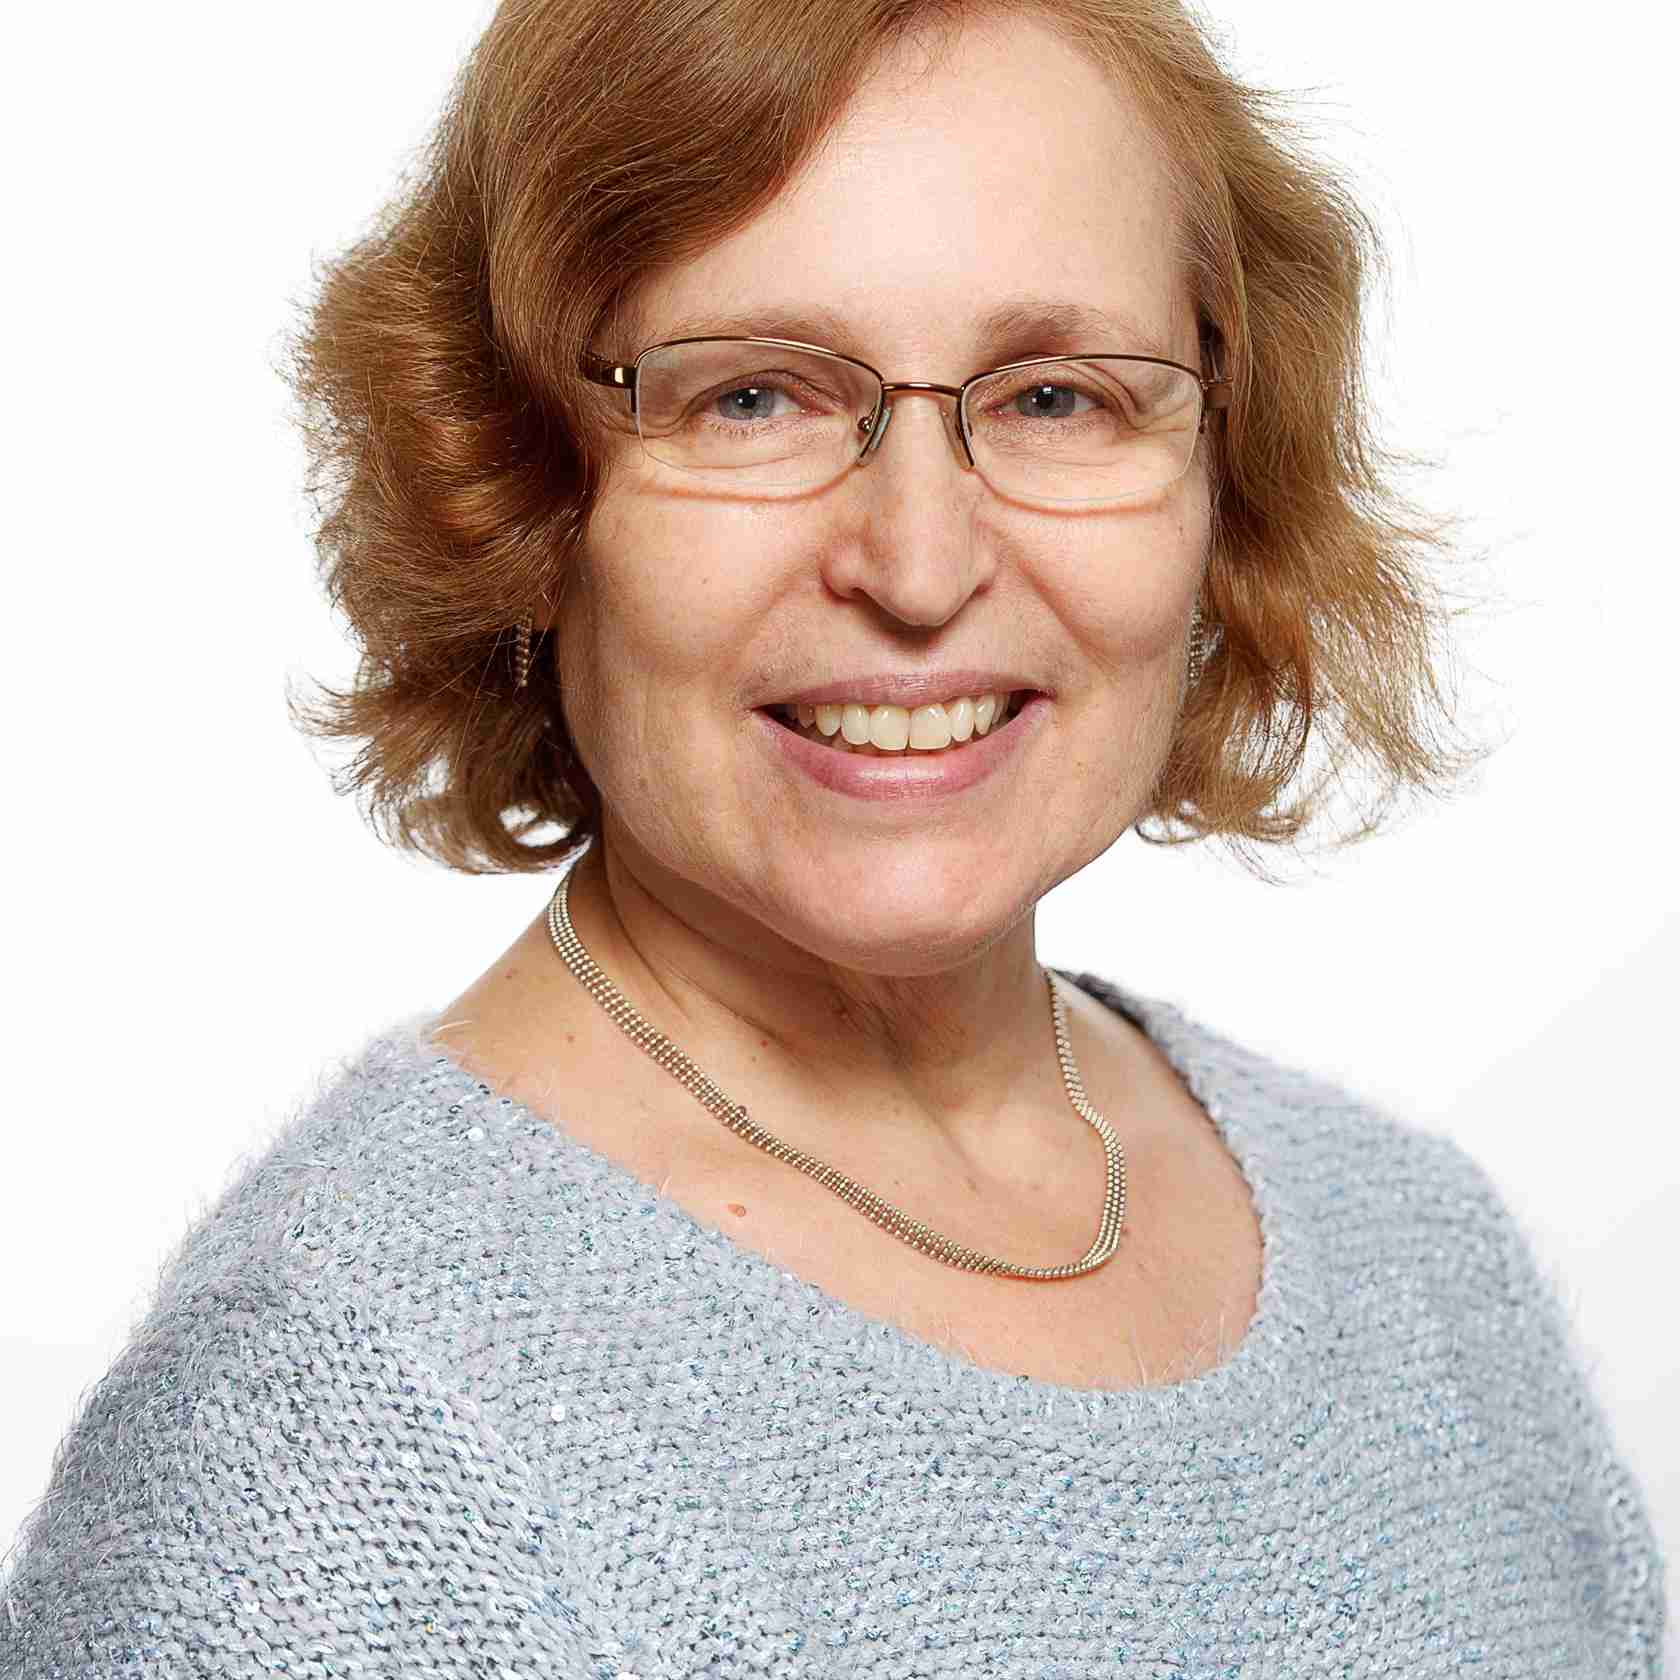 Profile image of Linda Dubrow-Marshall